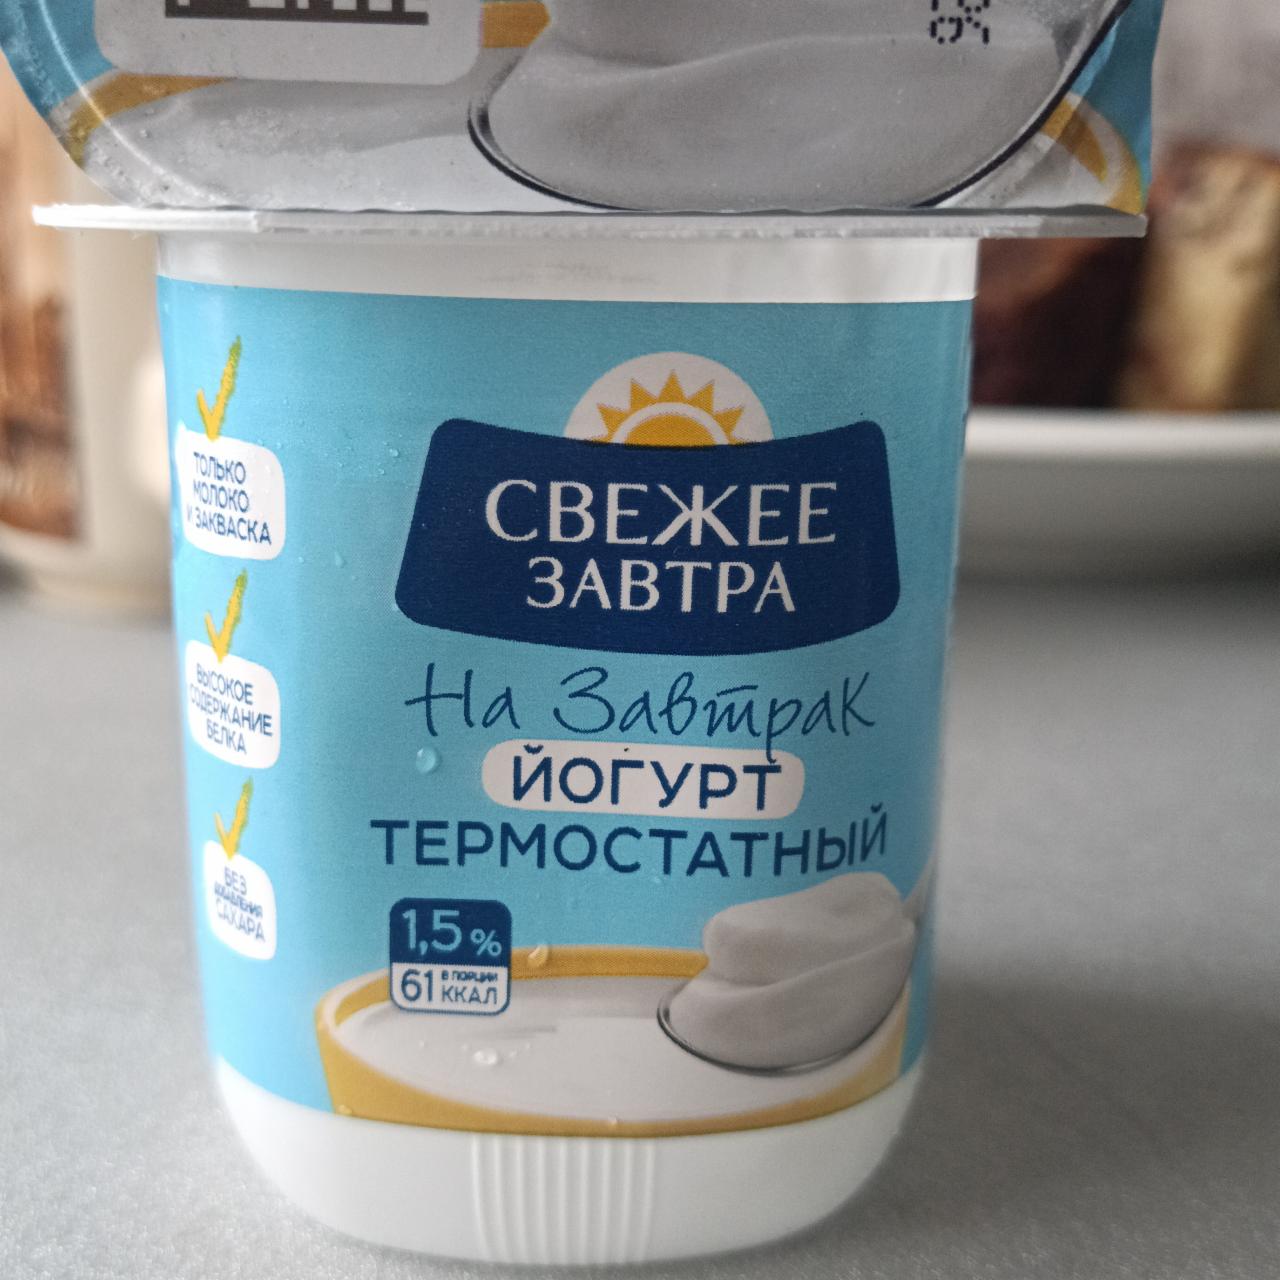 Фото - На завтрак йогурт термостатный 1.5% Свежее Завтра